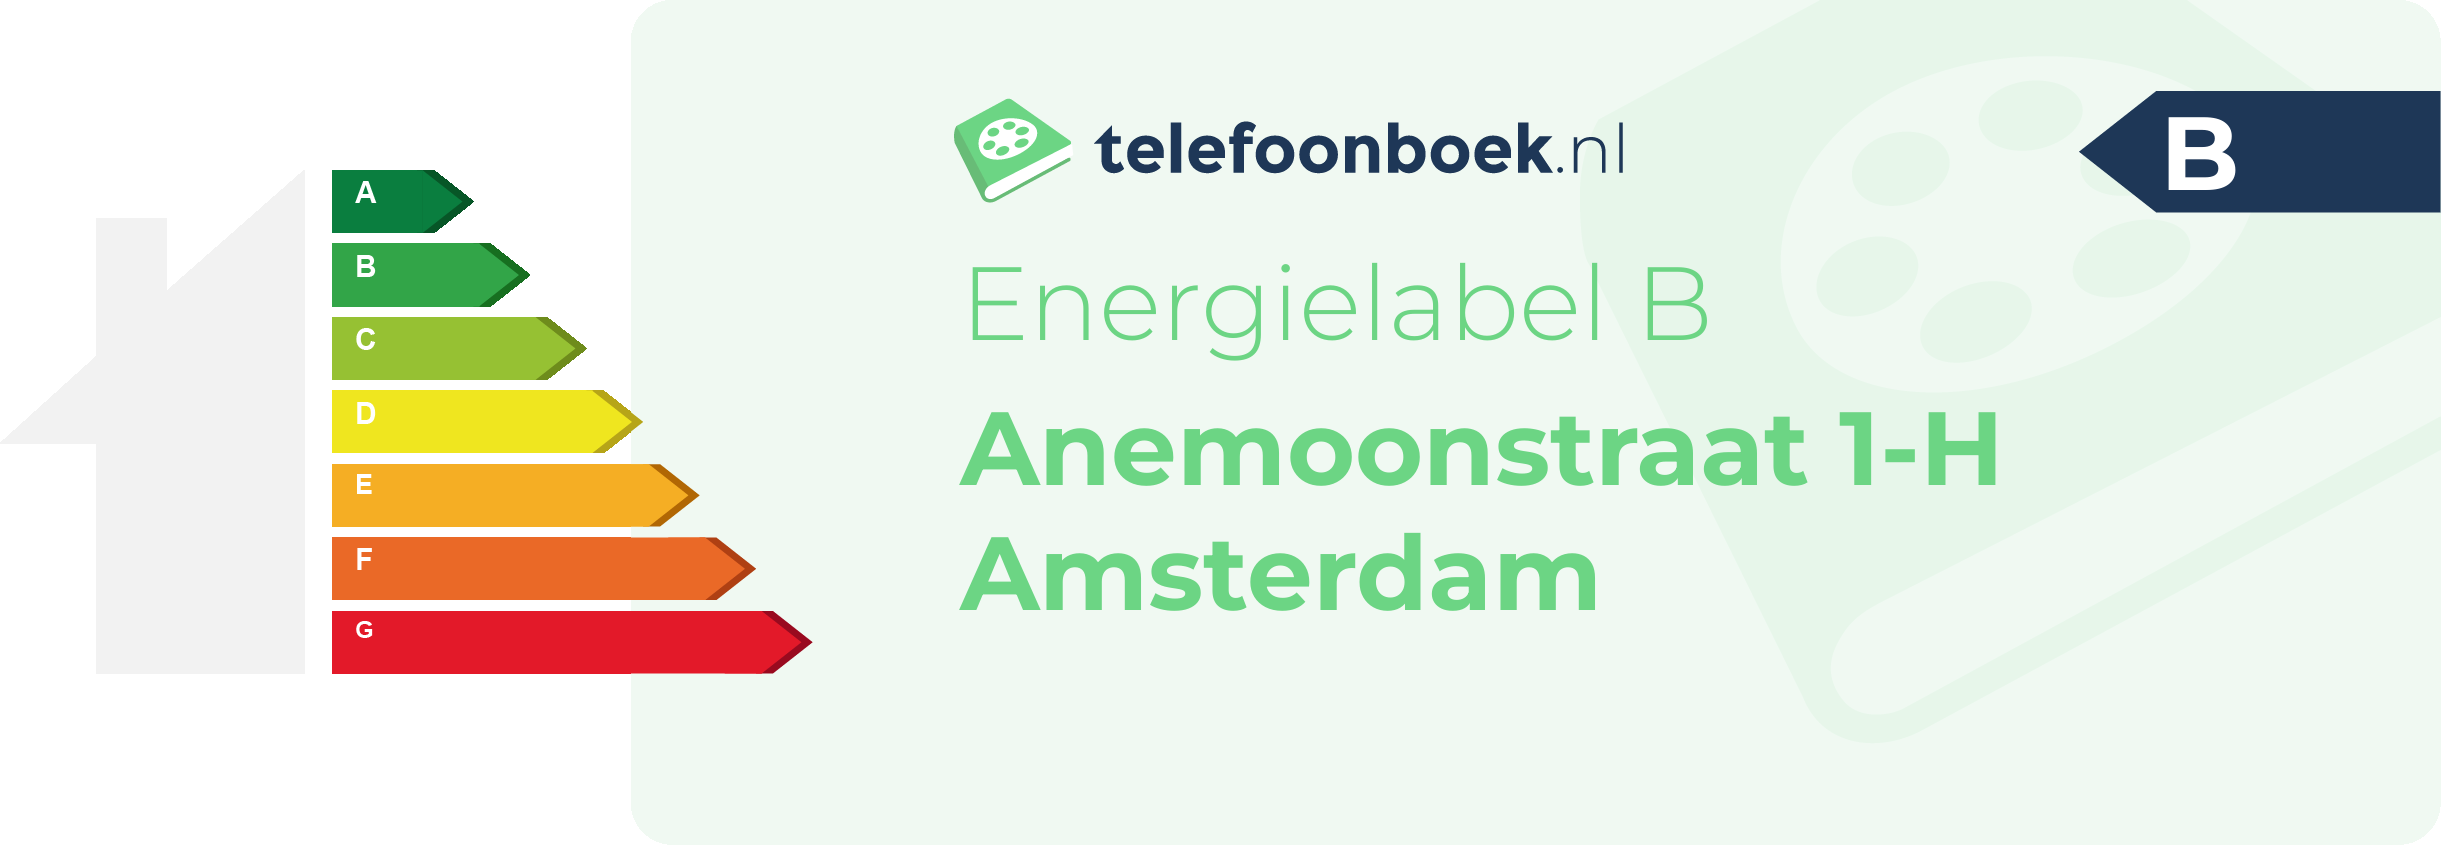 Energielabel Anemoonstraat 1-H Amsterdam